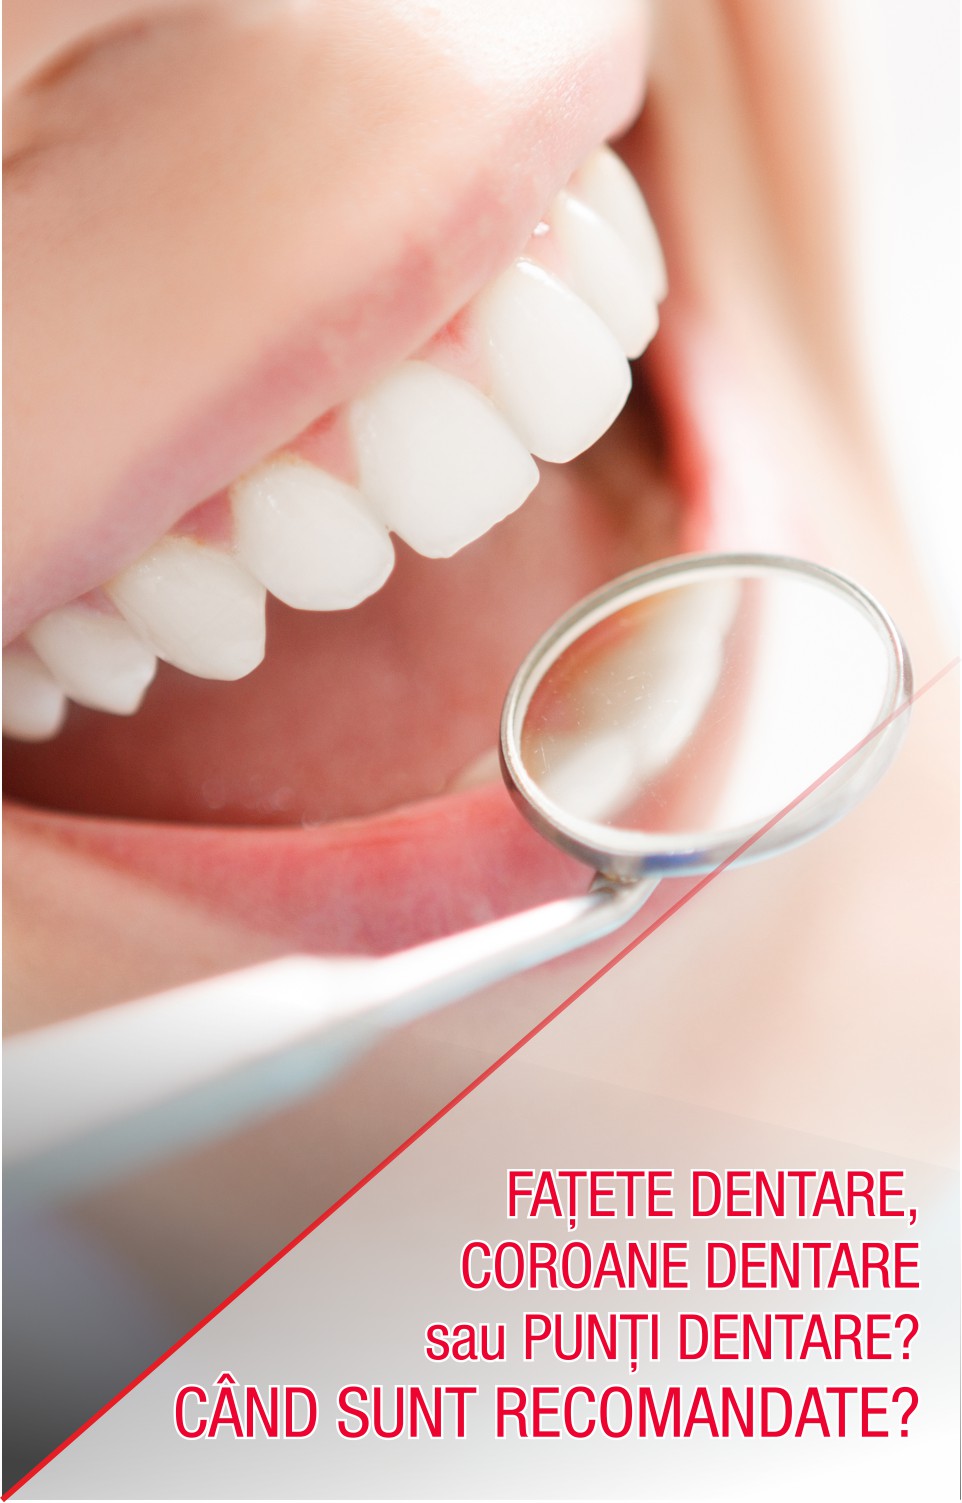 Fațete dentare, coroane dentare sau punți dentare? Când sunt recomandate?